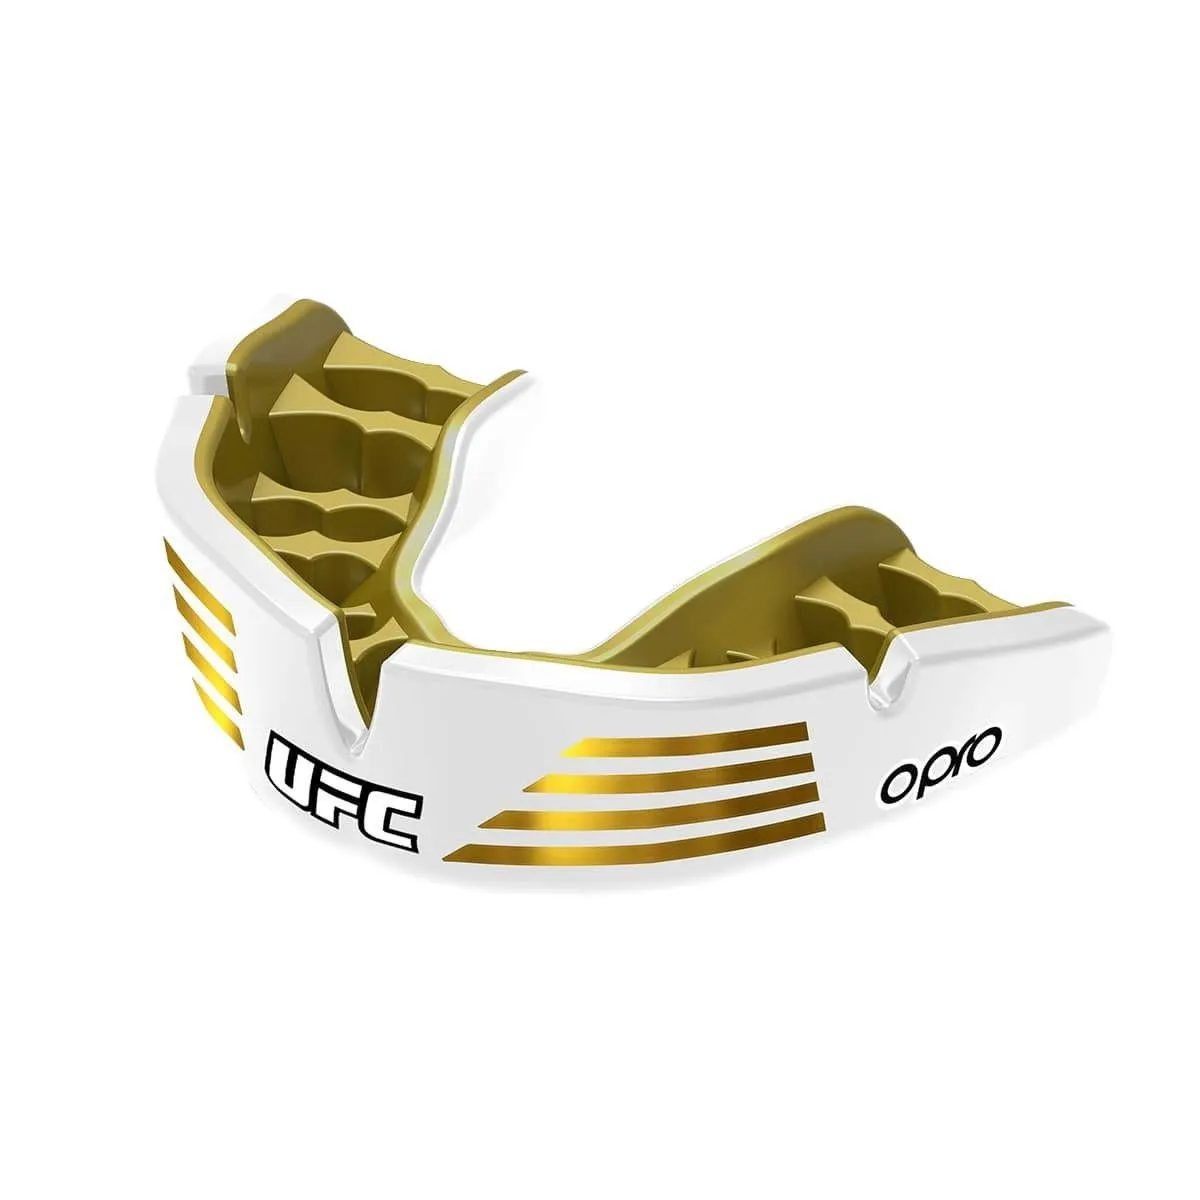 OPRO "UFC" Zahnschutz Insten Custom FIT Gold/weiß